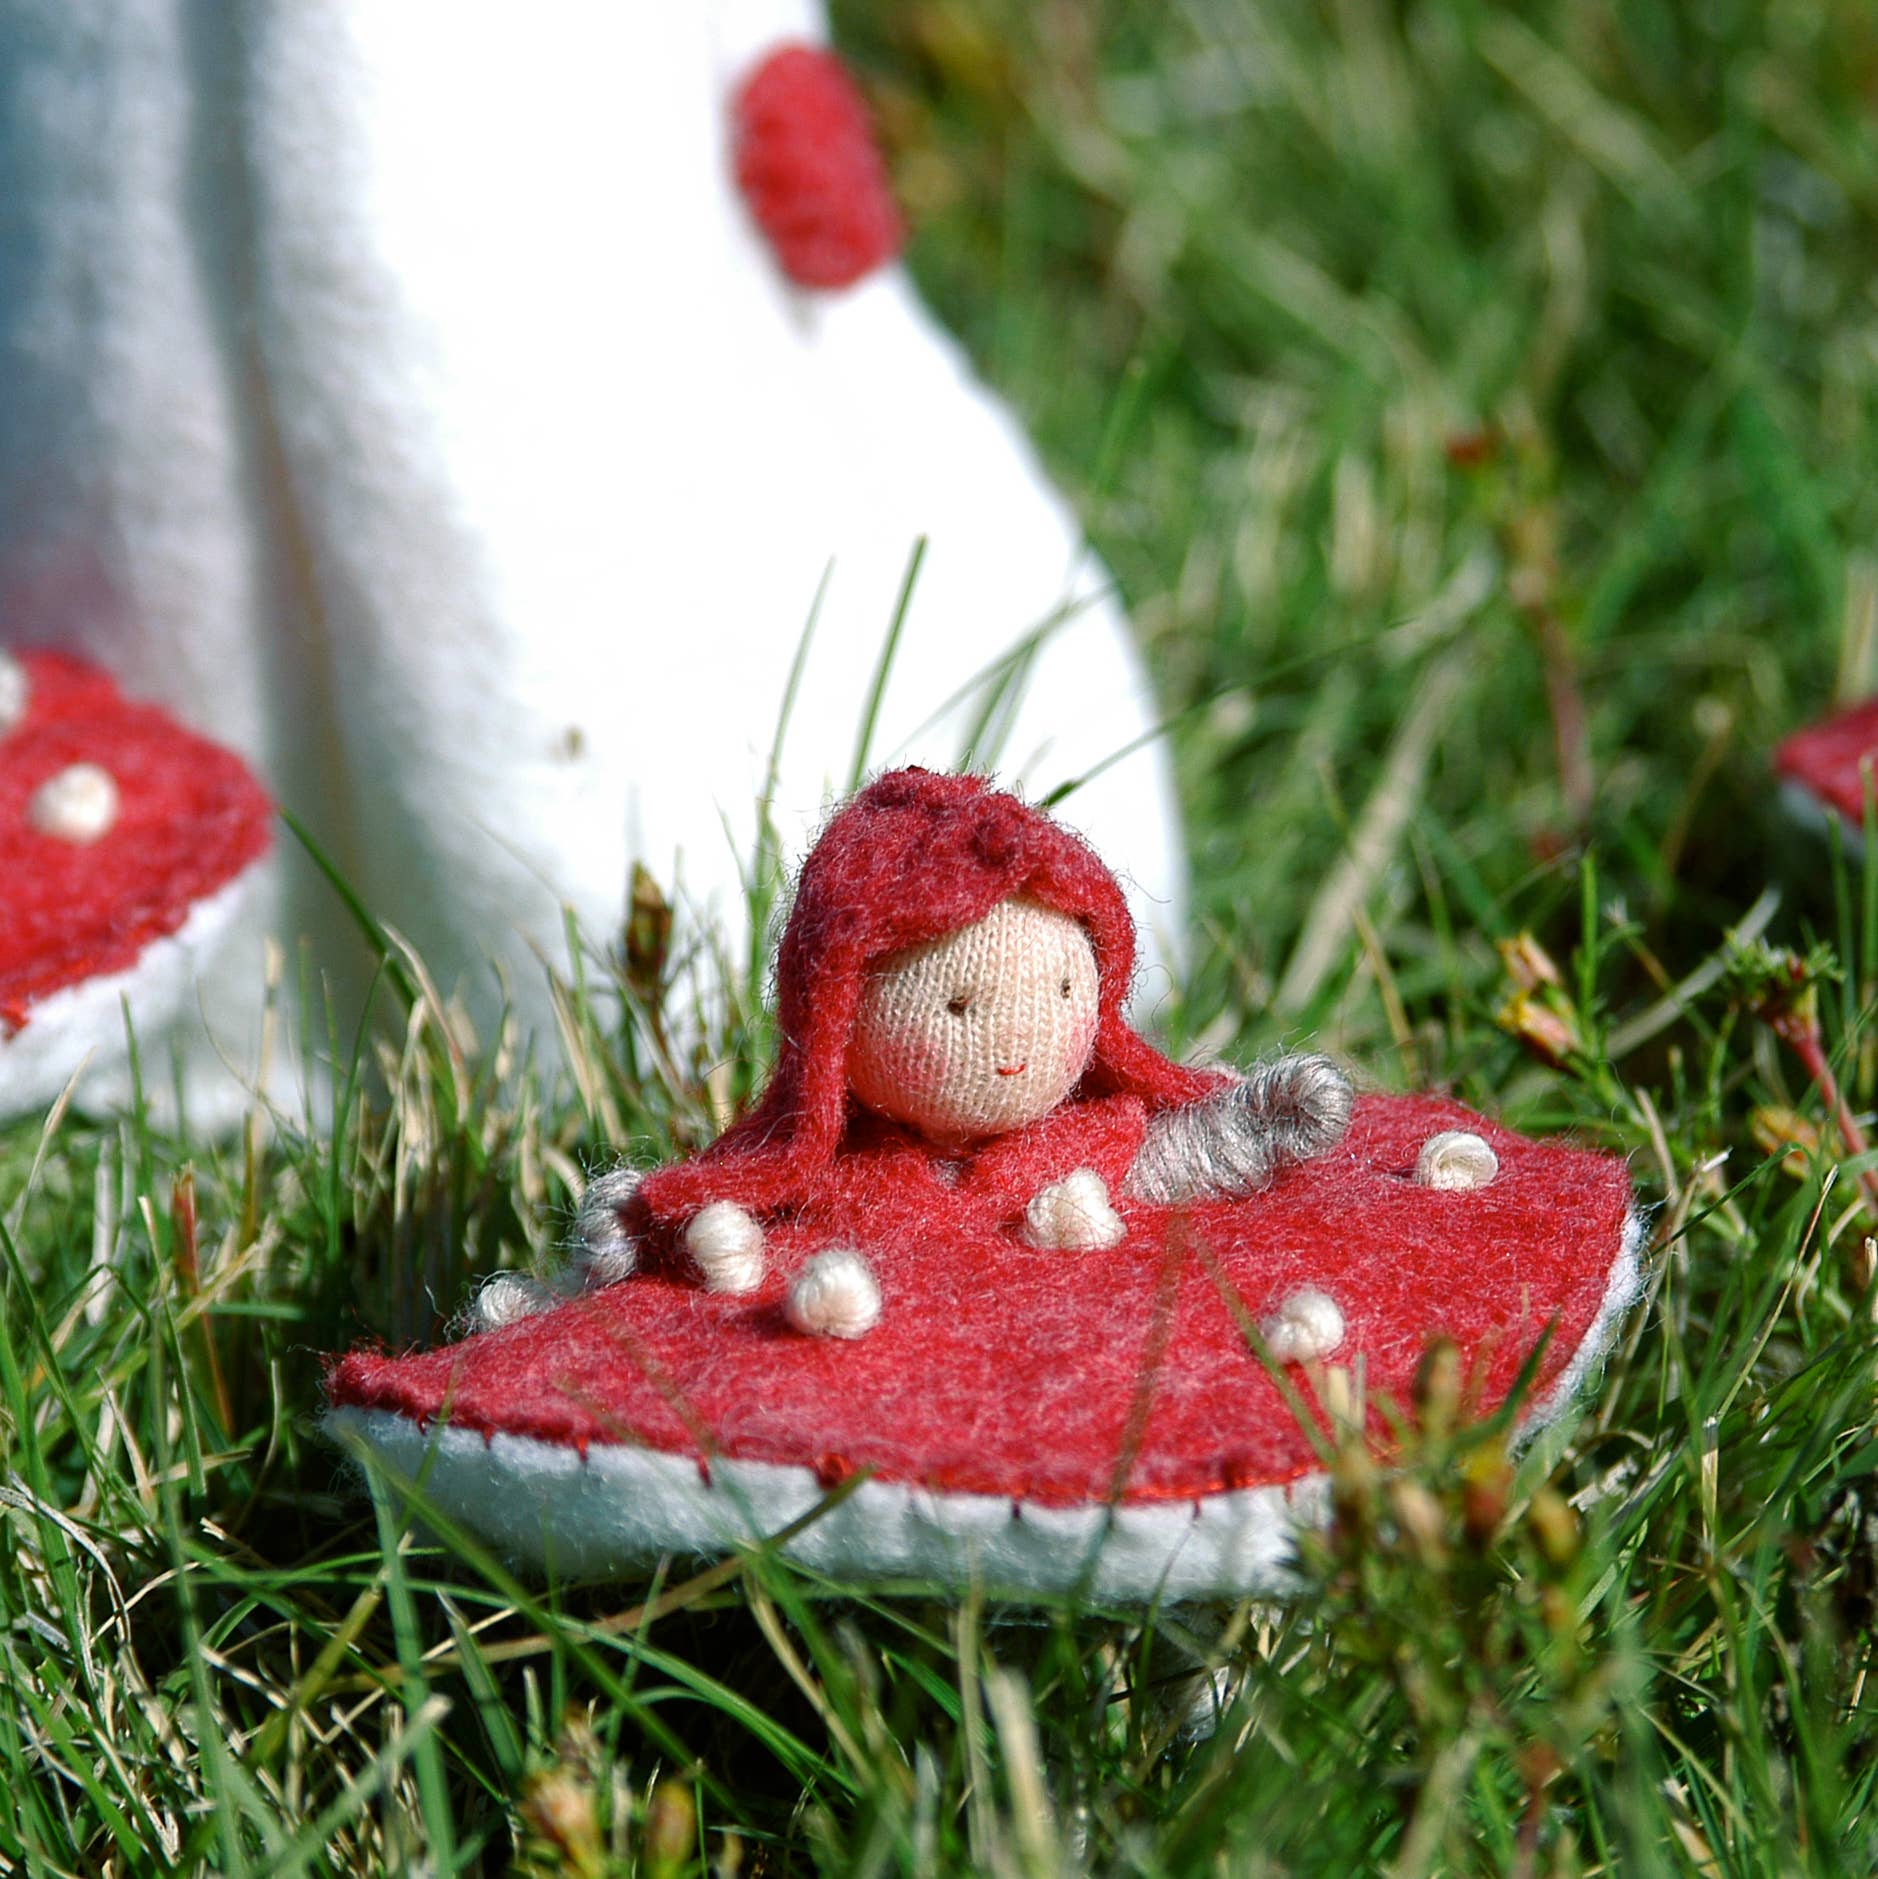 Imagine Childhood - DIY Mushroom Fairy Kit